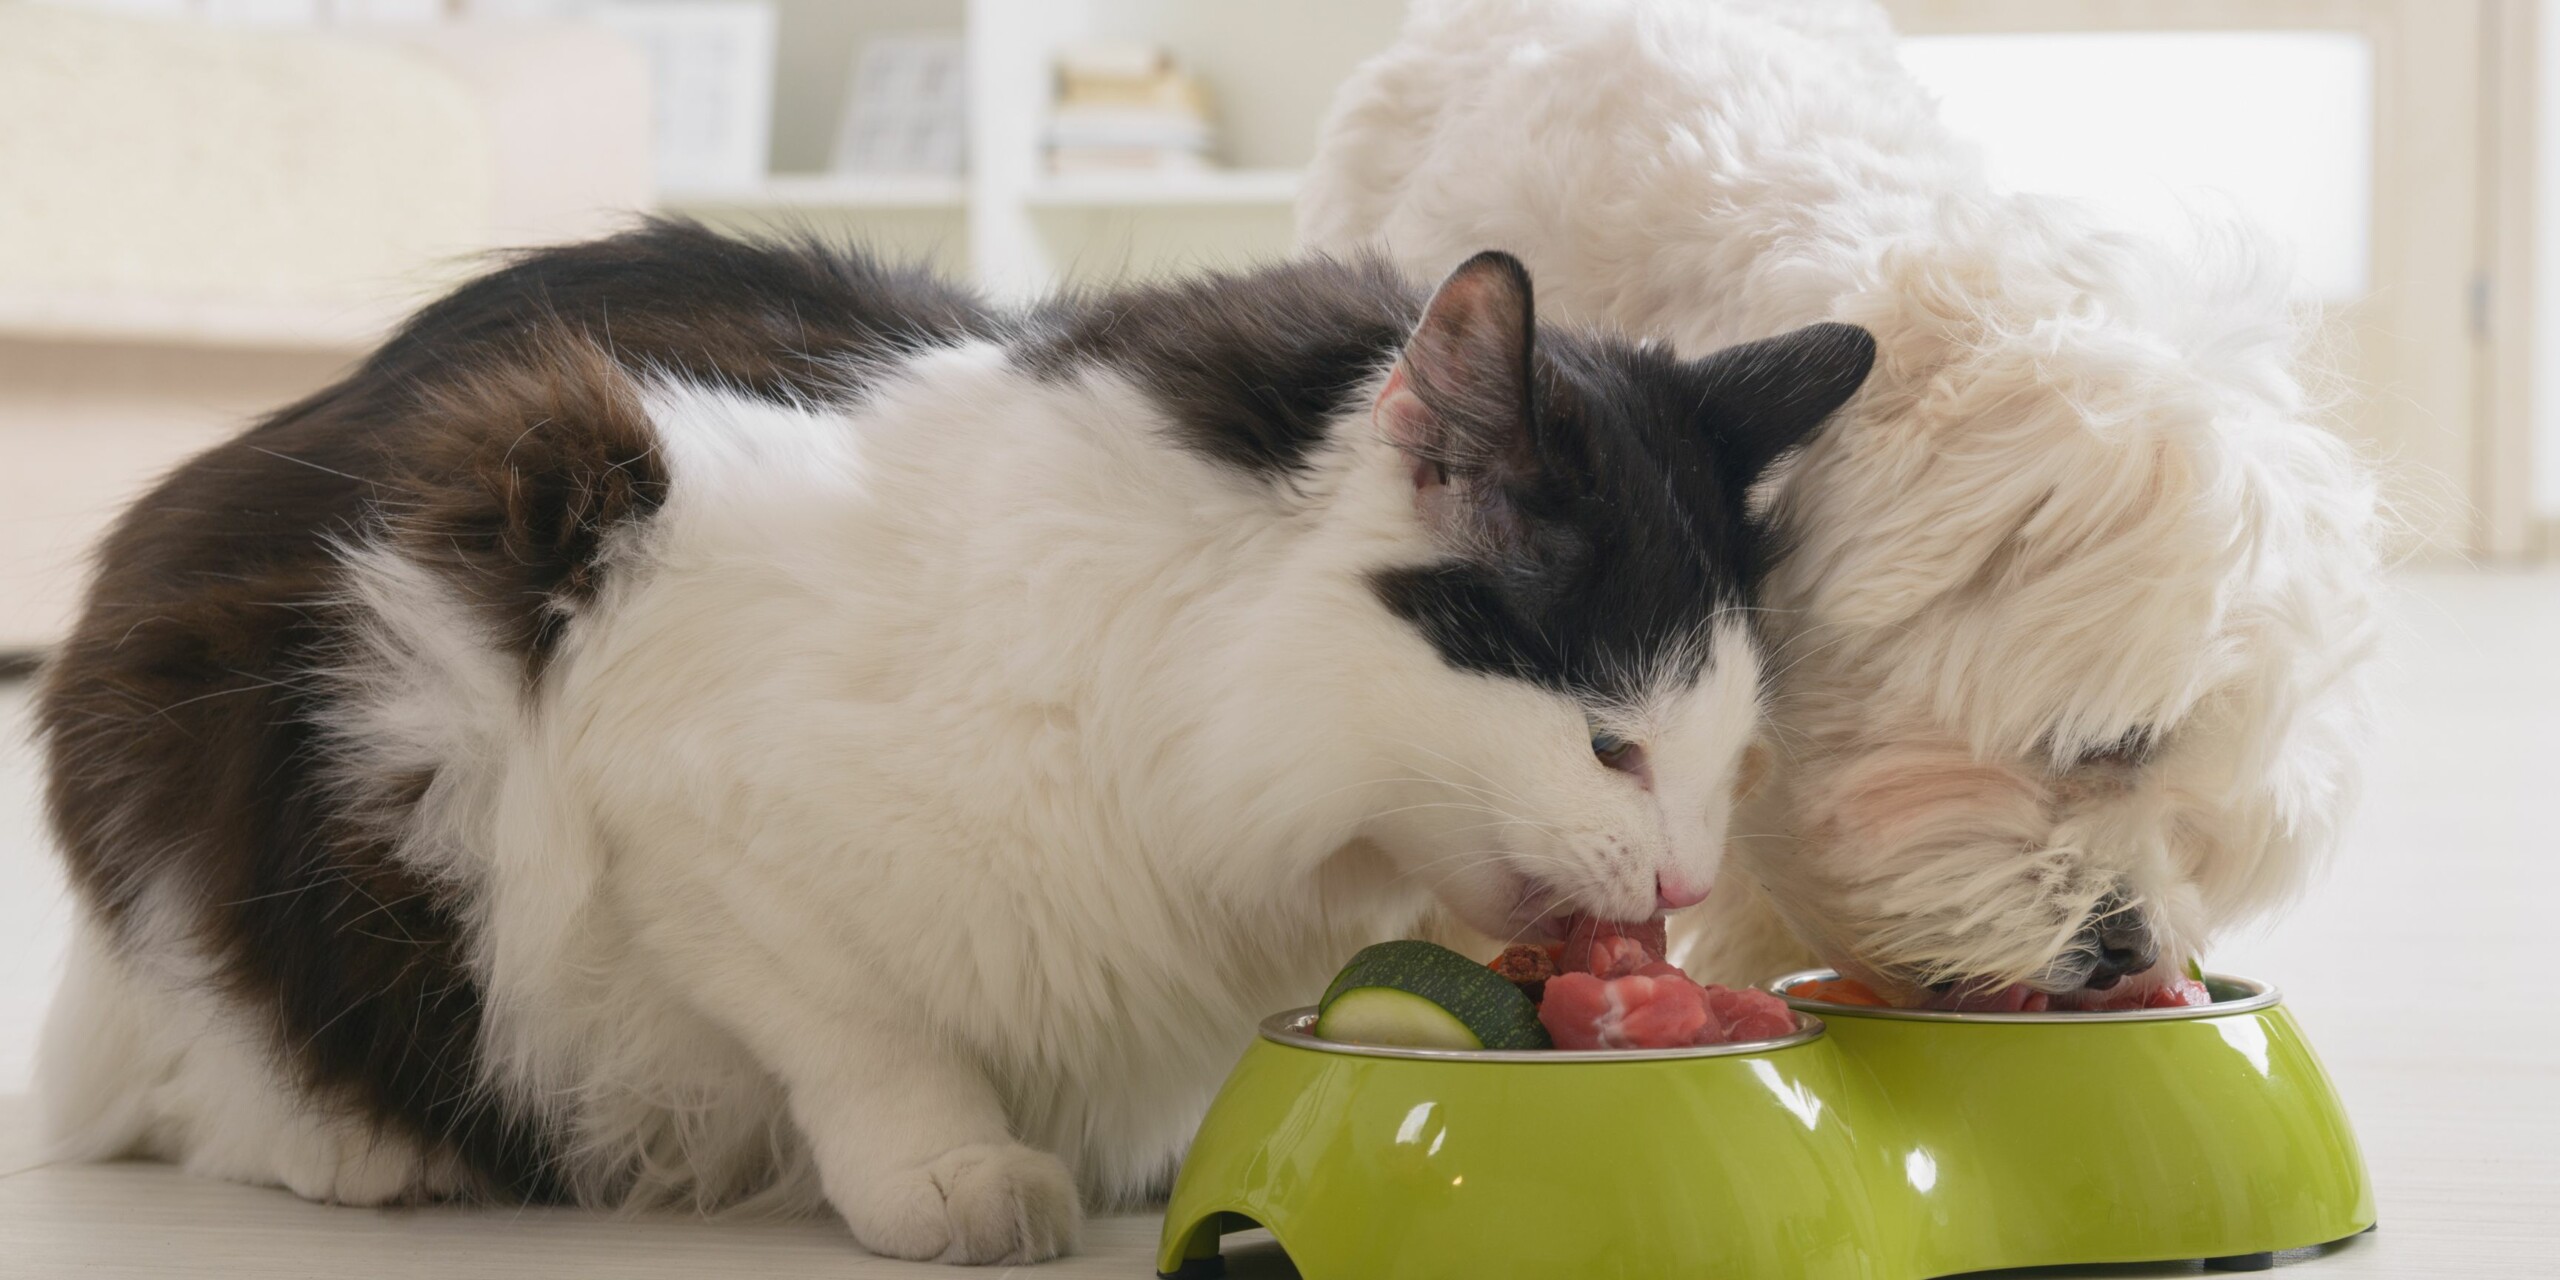 Perche i Gatti Non Dovrebbero Mangiare Cibo per Cani Guida alla Nutrizione Felina scaled